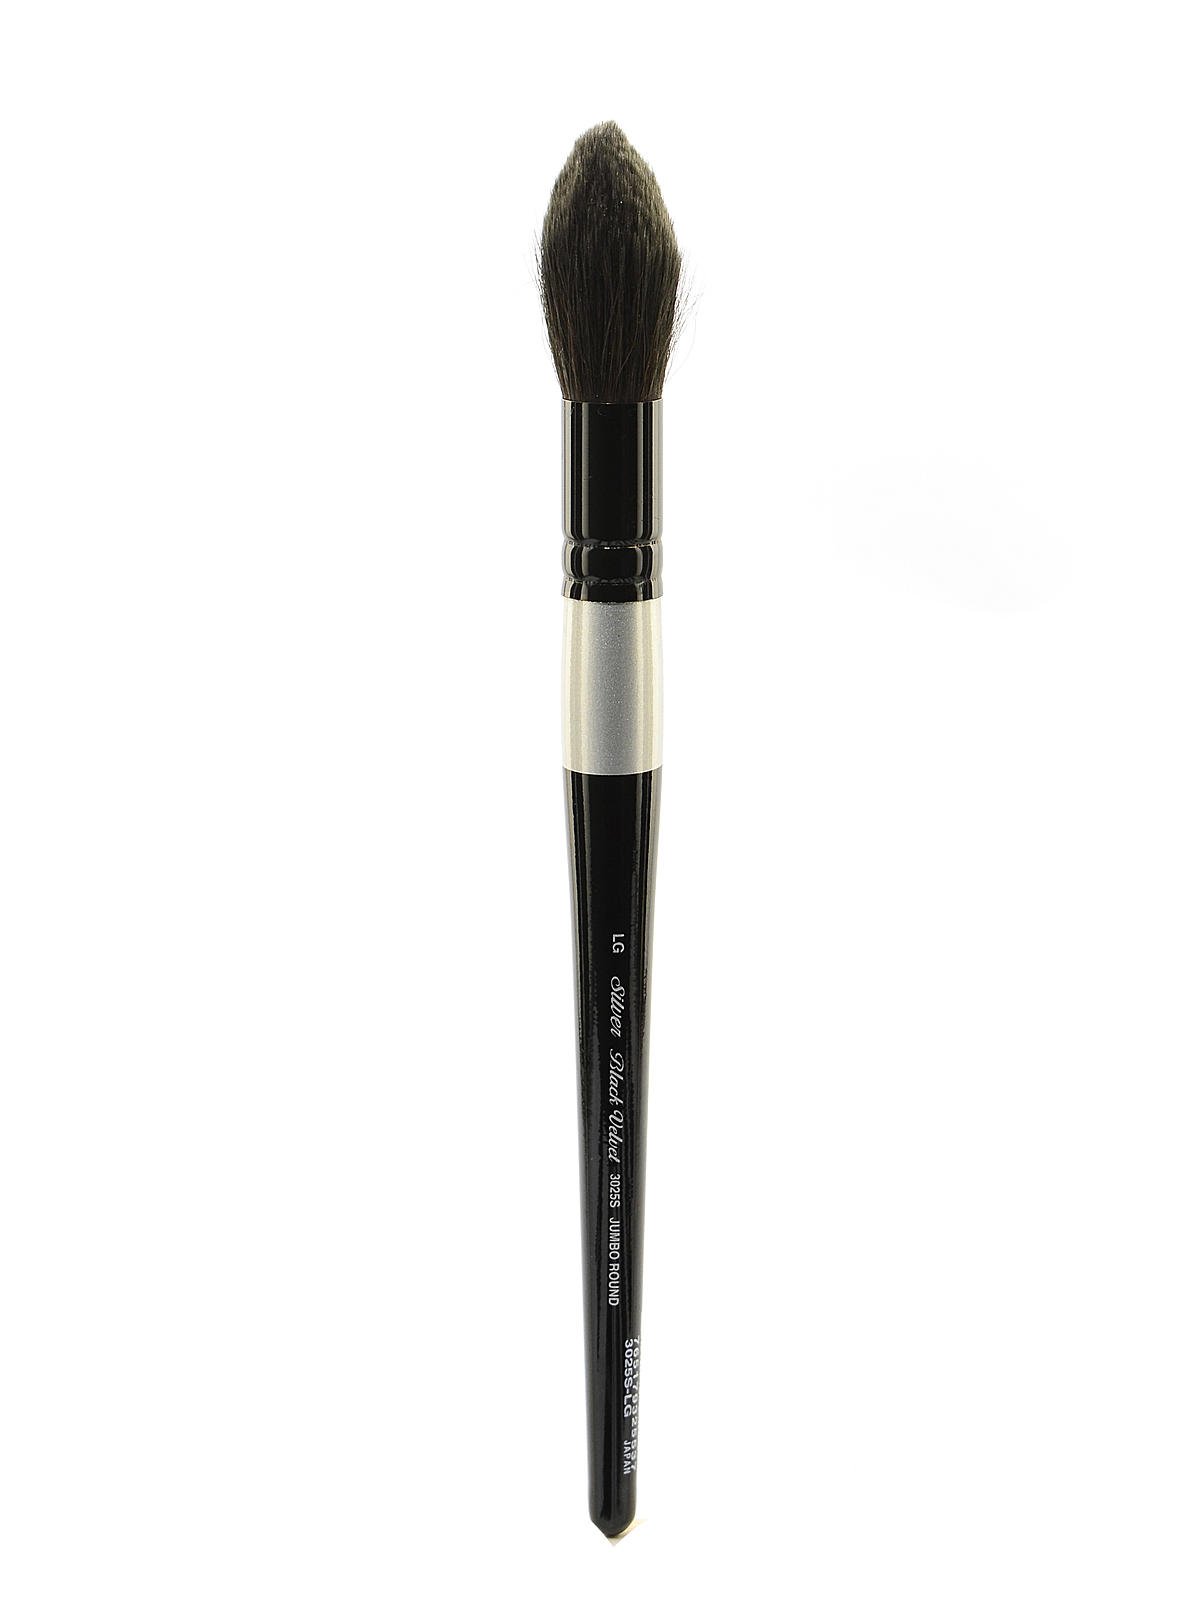 Silver Brush Black Velvet Series 3009S Oval Wash 3/4